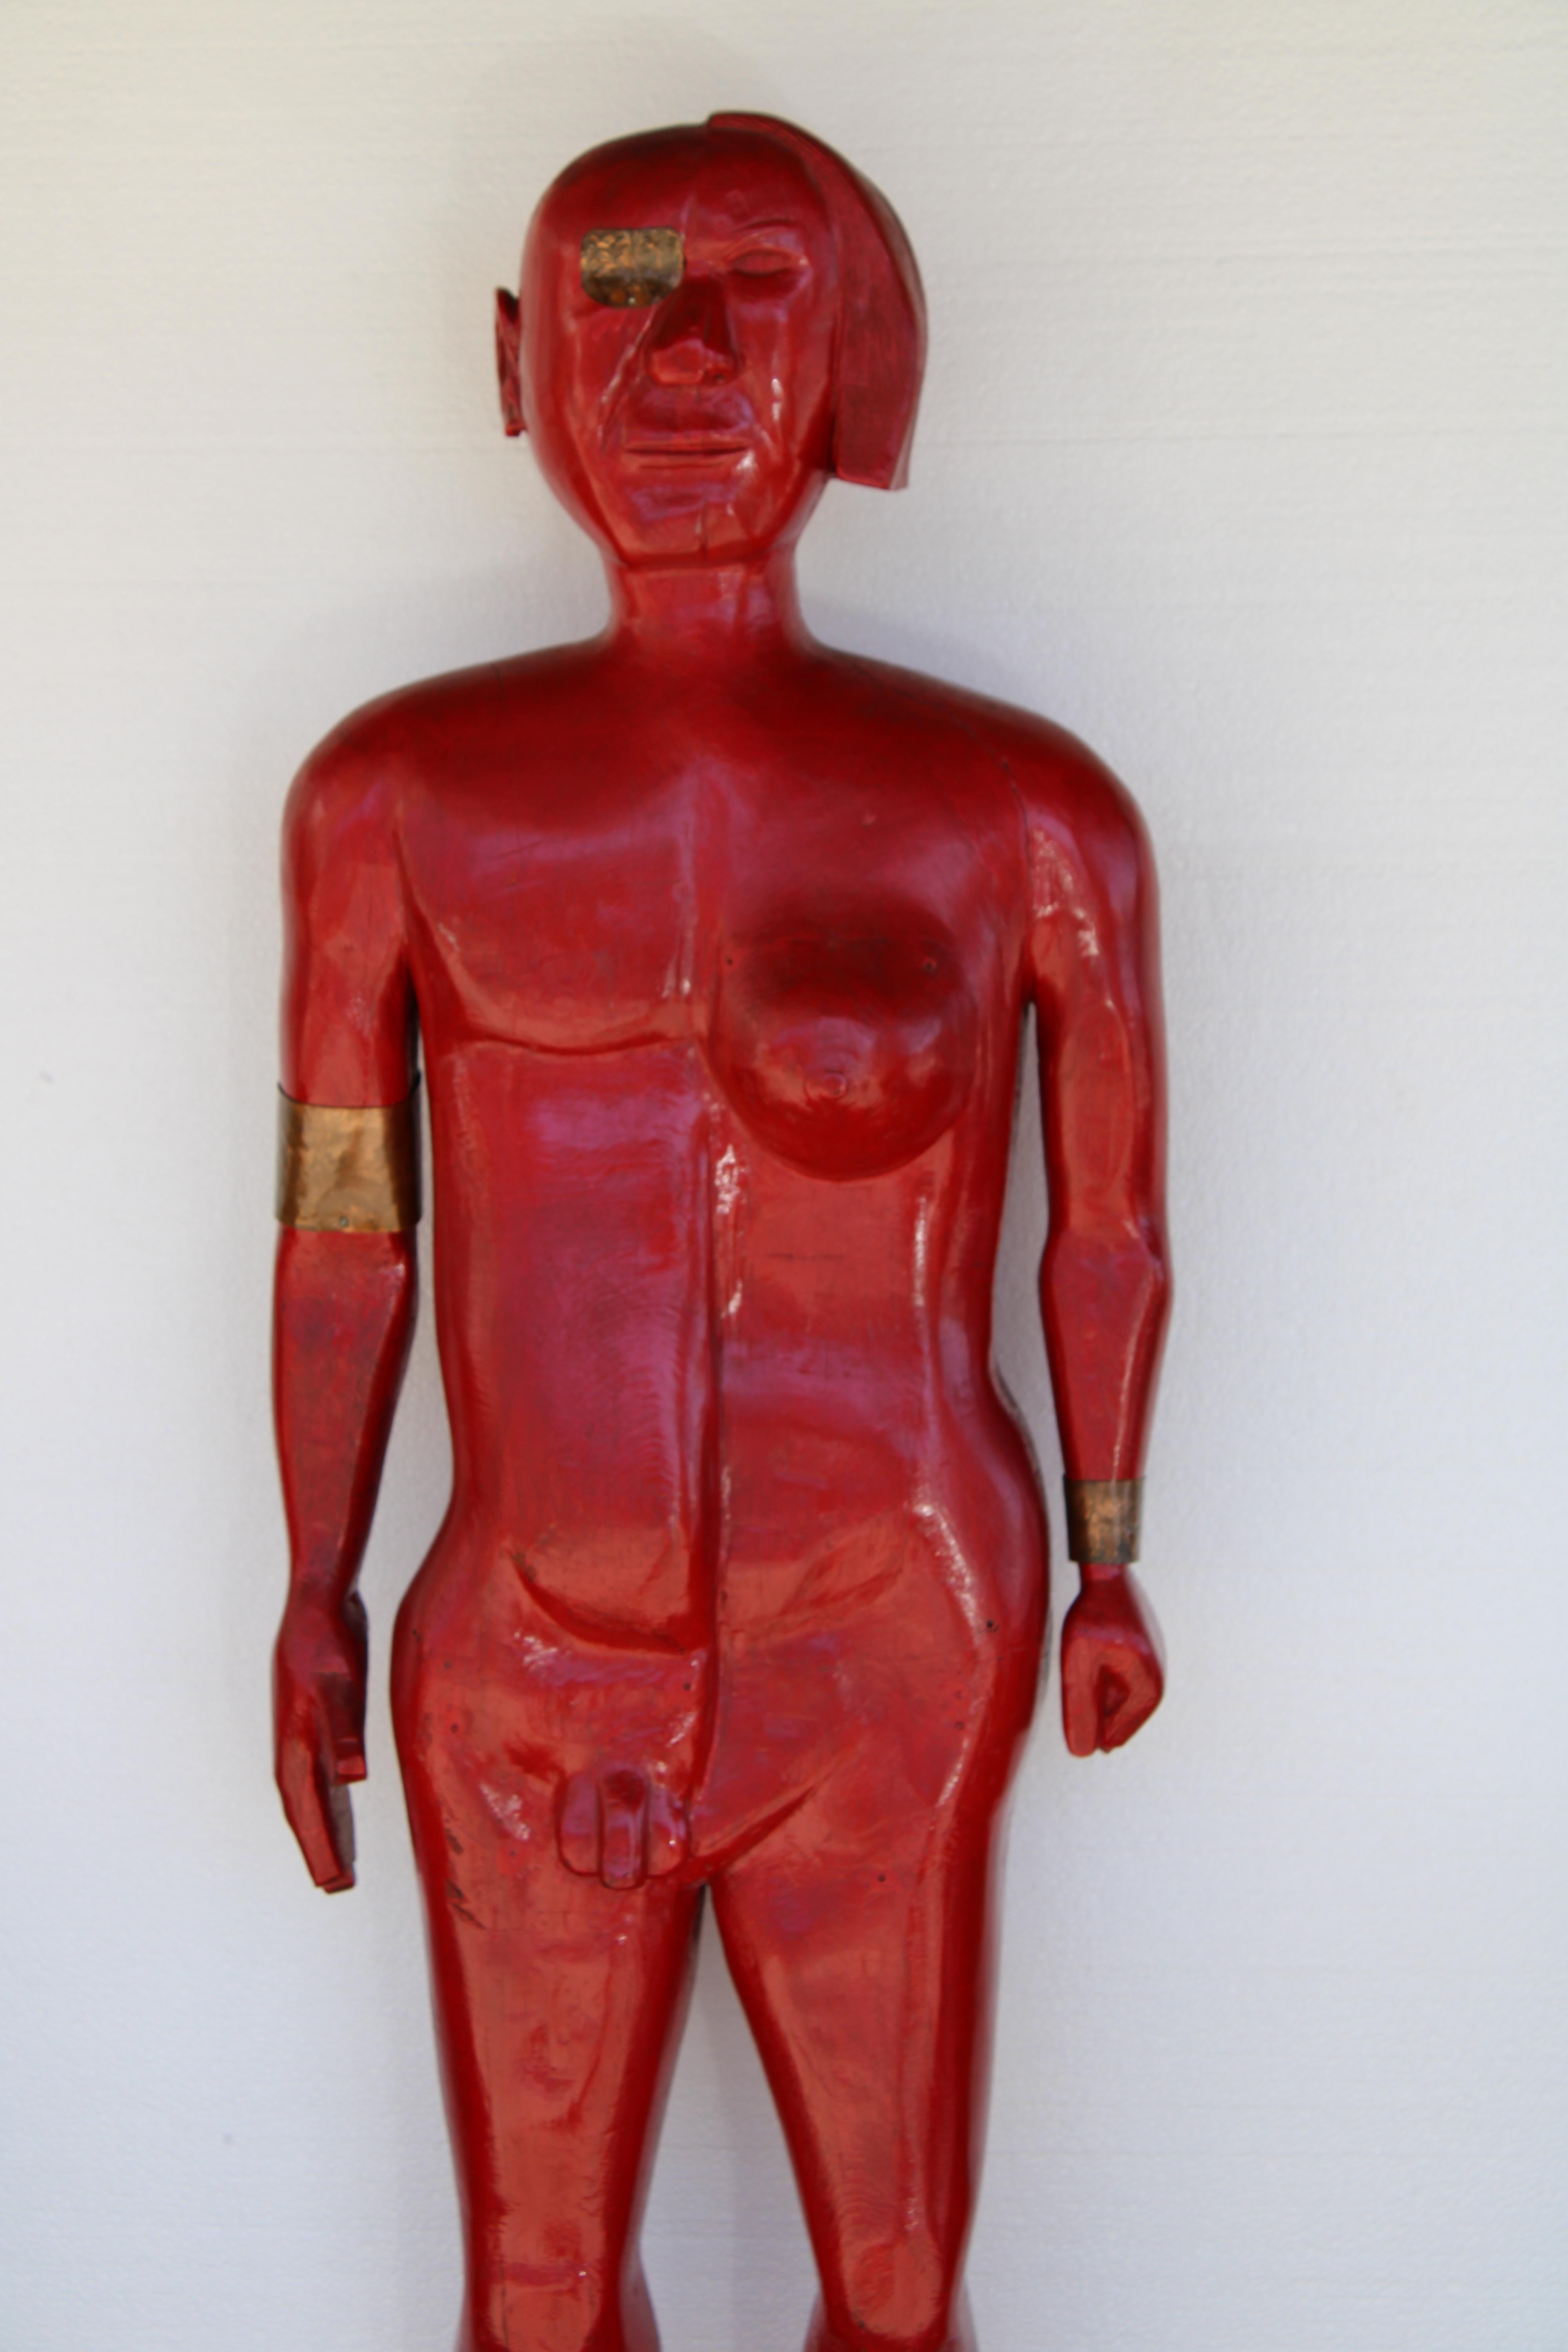 Zigarrenladen rote Holzstatue mit dem Titel Half and Half,  Pfeifen-Mischung.  Die Statue ist halb Mann und halb Frau.  Der linke Fuß hat eine eingeritzte Nummer von 523.  Ein großartiges Stück Americana.  Die Gesamthöhe beträgt 62